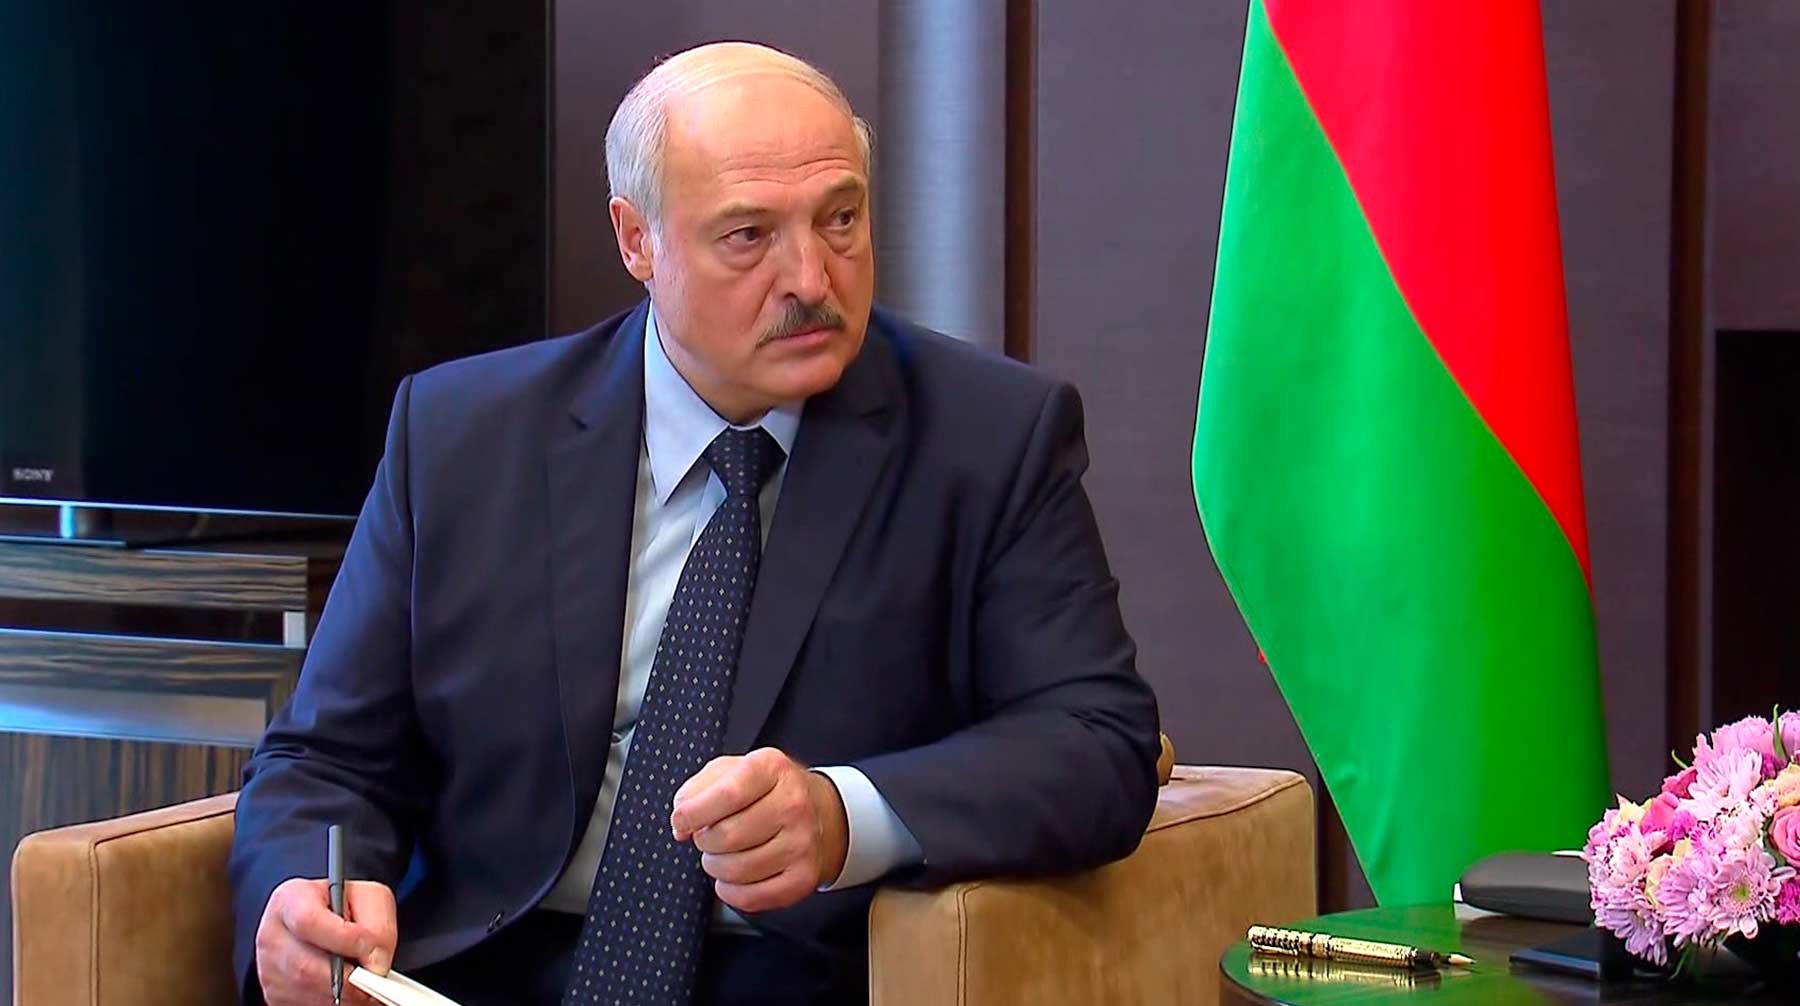 Dailystorm - Лукашенко пообещал развивать «хороший национализм», чтобы отличаться от русских